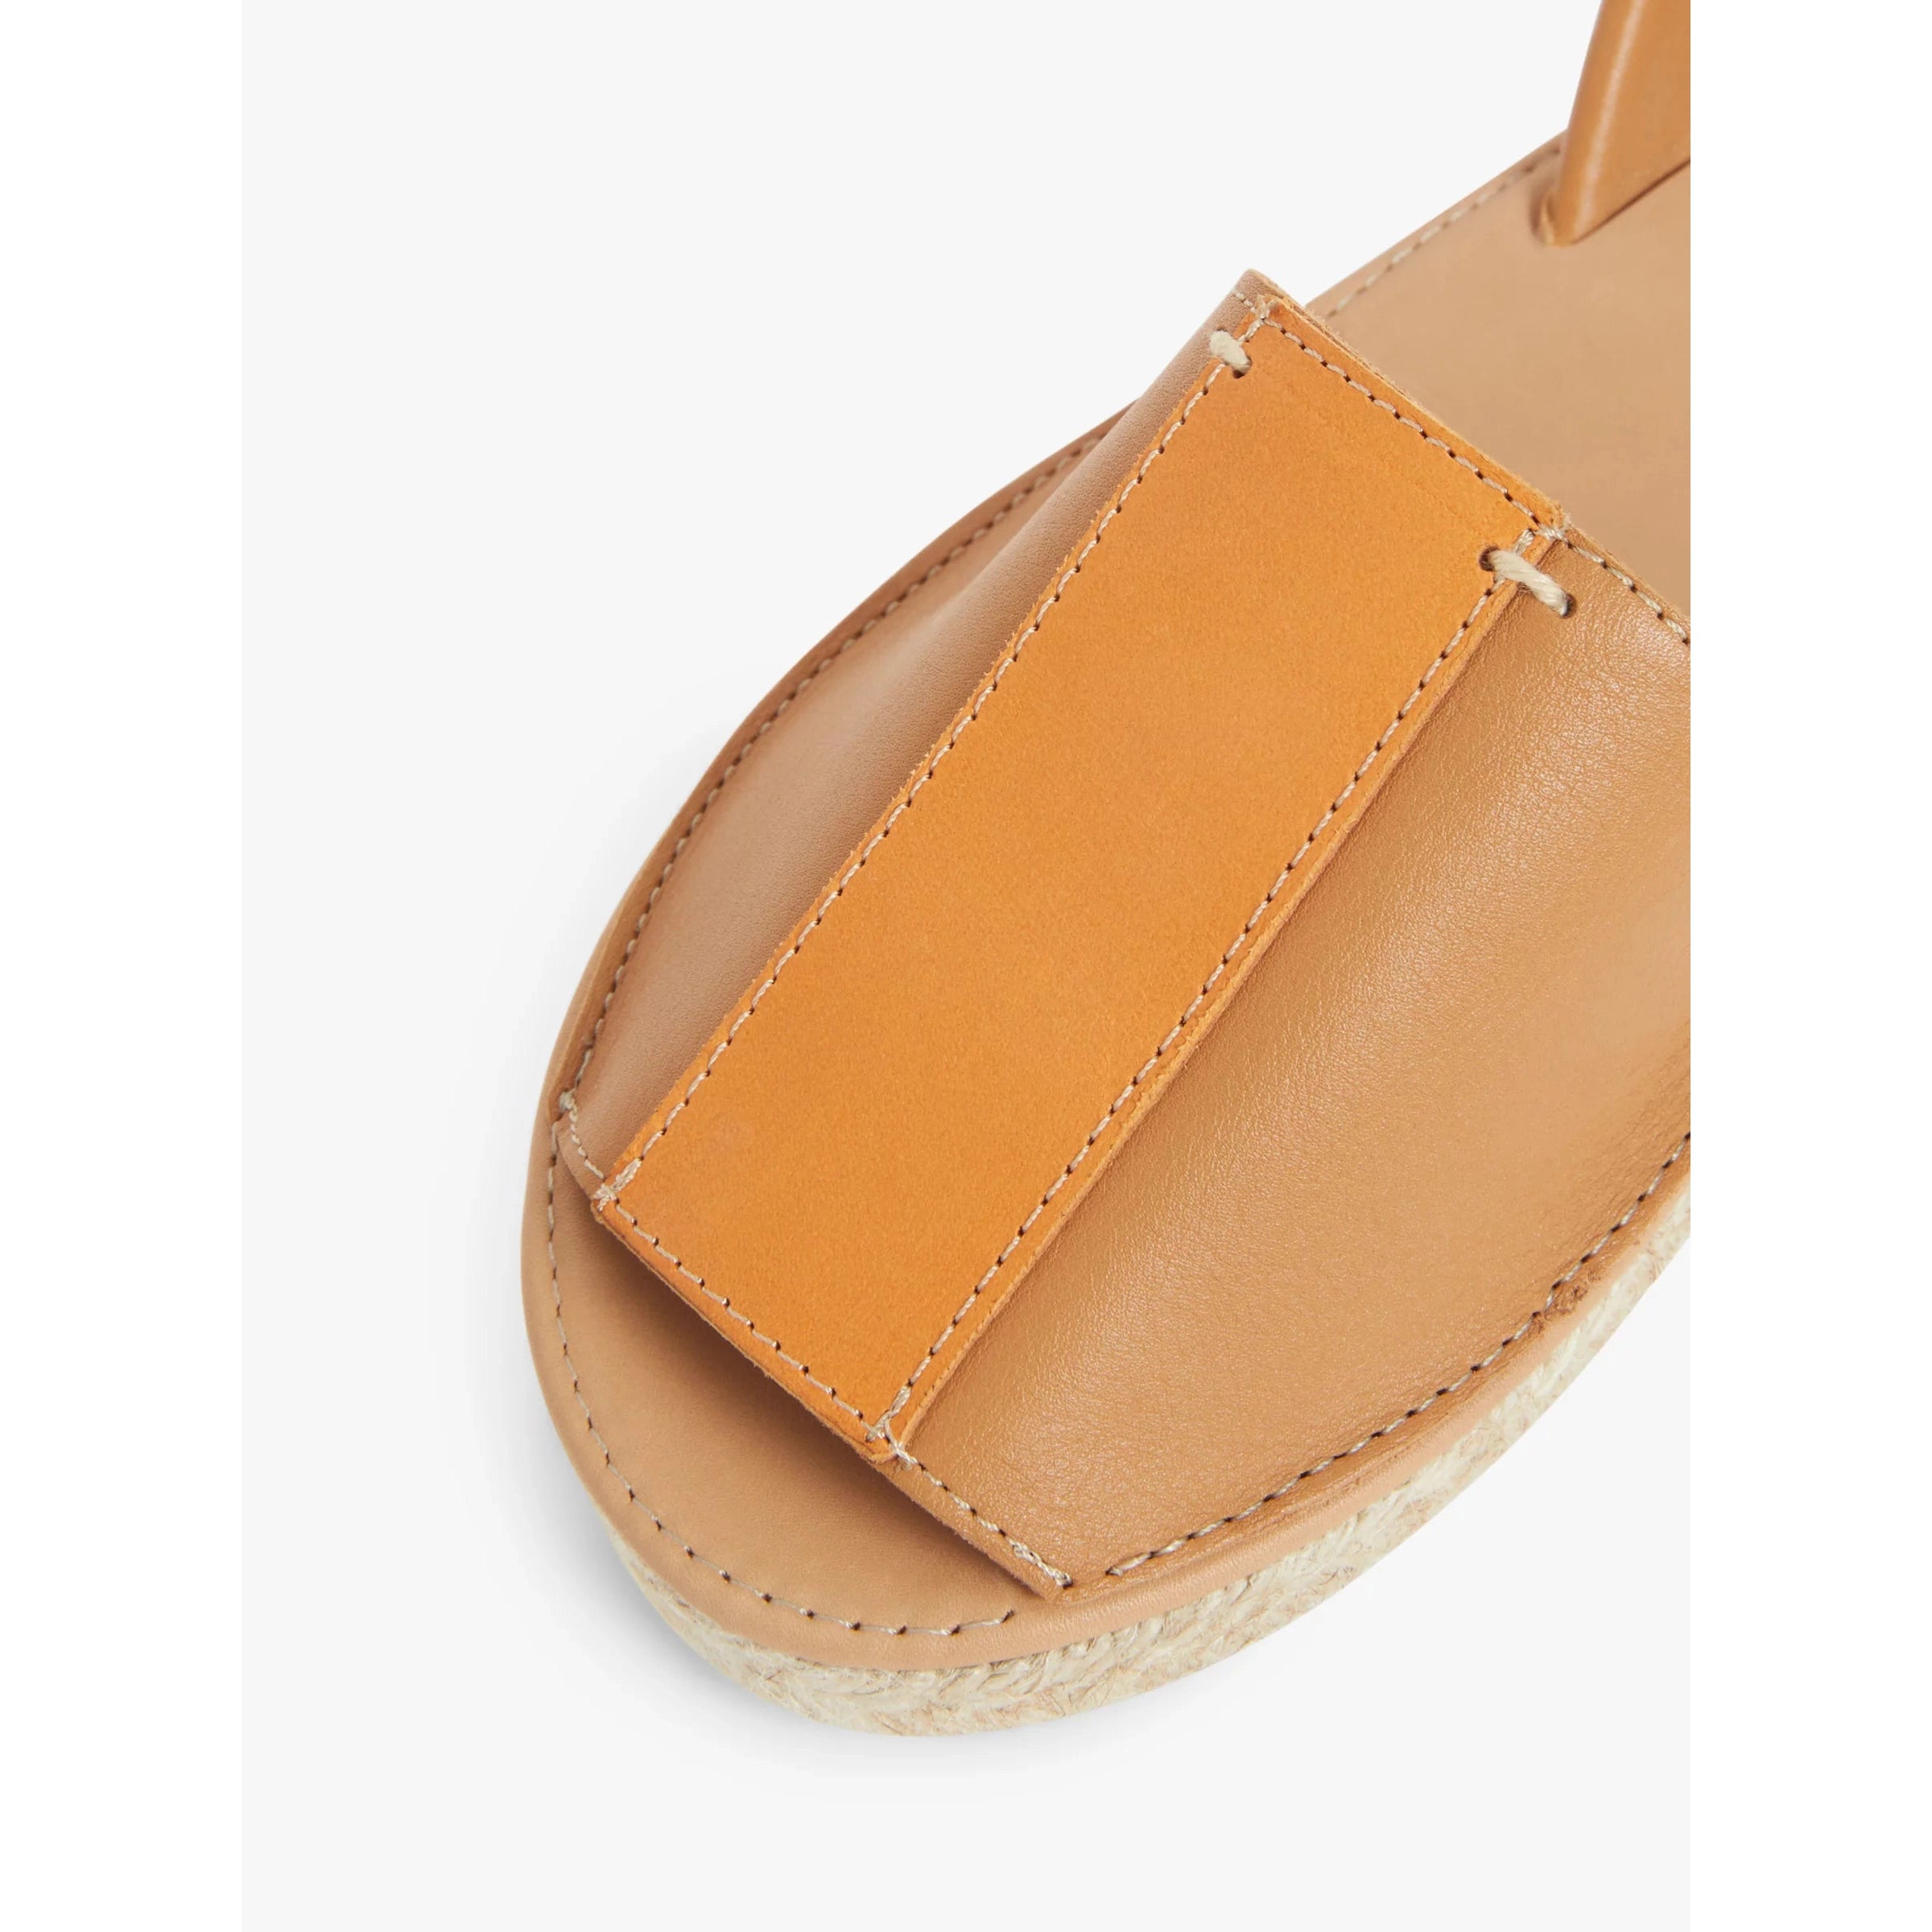 John Lewis Leticia Flat Colour Block Sandals, Tan ( Size 4 )